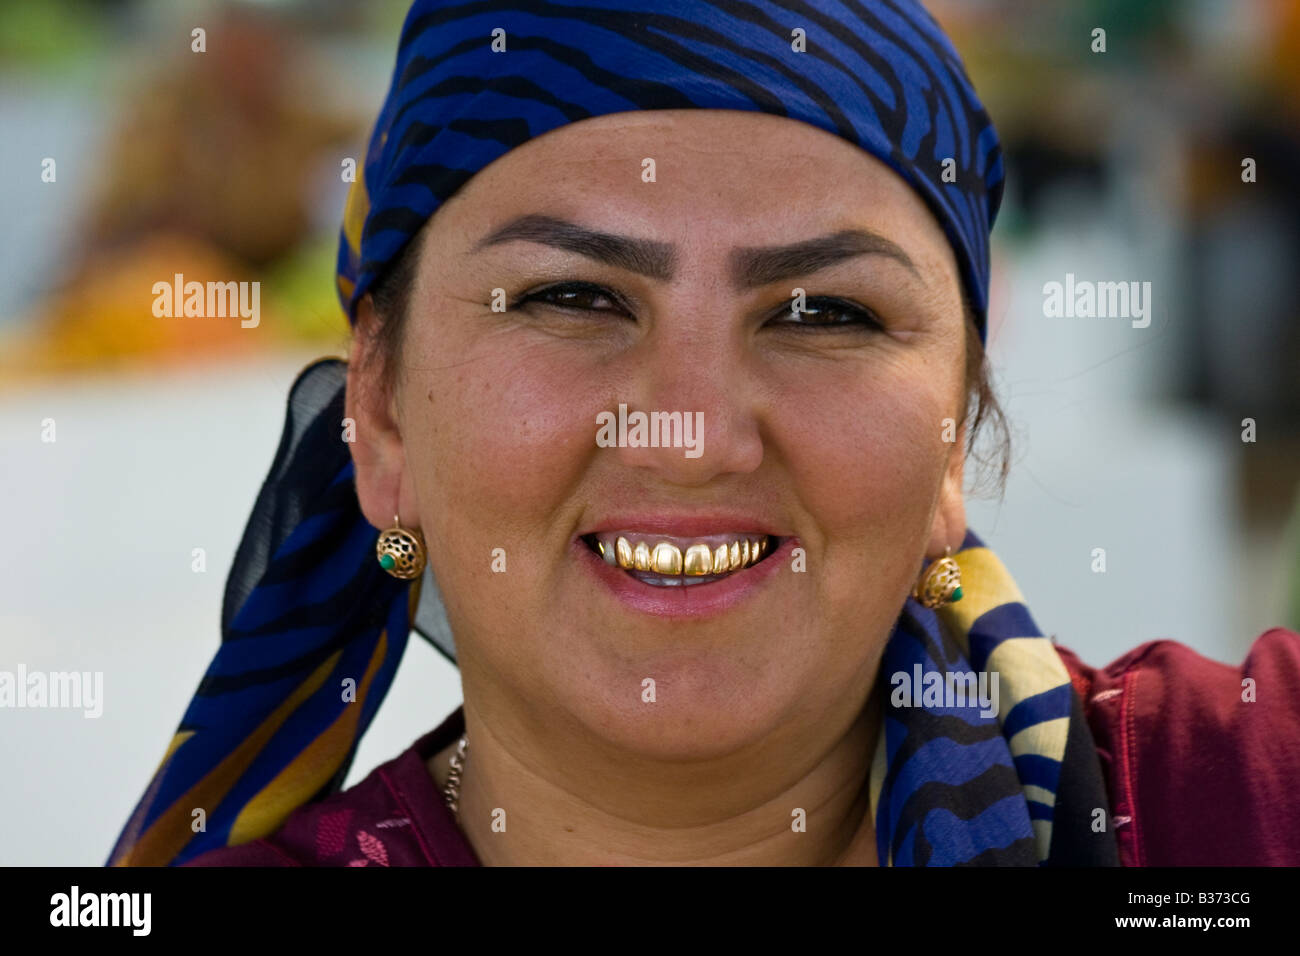 Таджик без уха. Узбечка с золотыми зубами. Таджичка с золотыми зубами. Таджикские женщины.